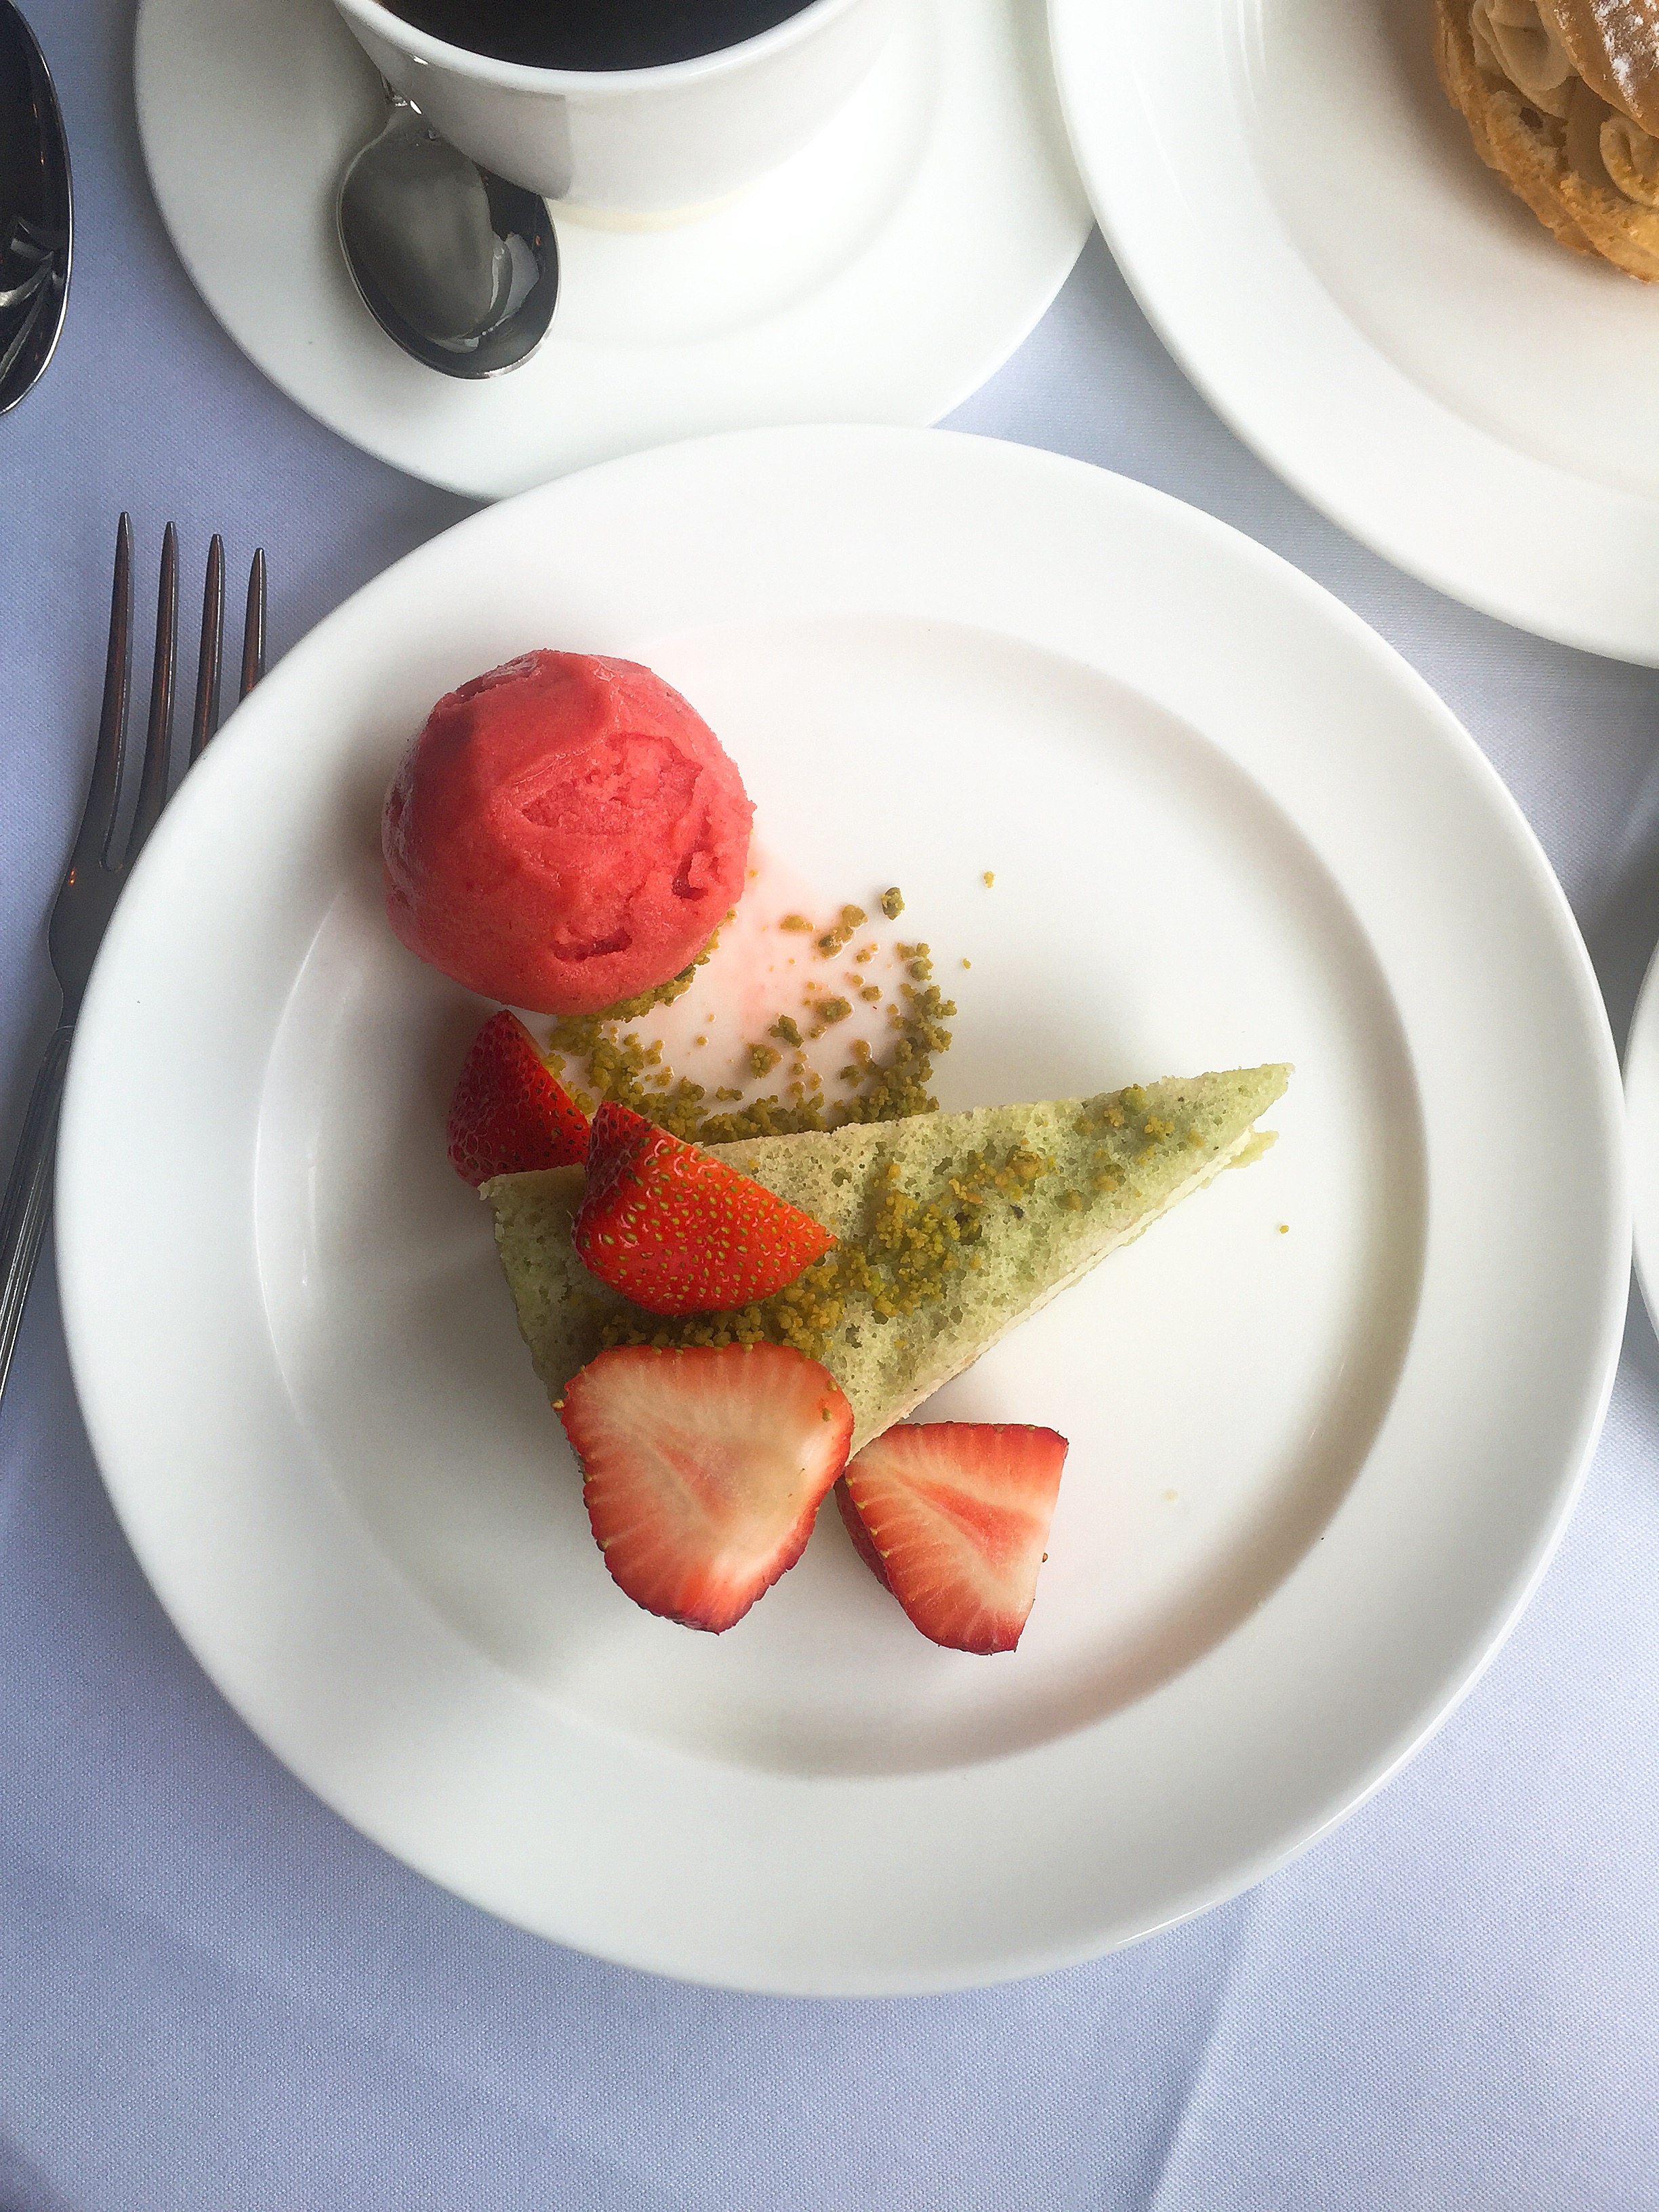 Pistachio dessert - Cafe Monico review